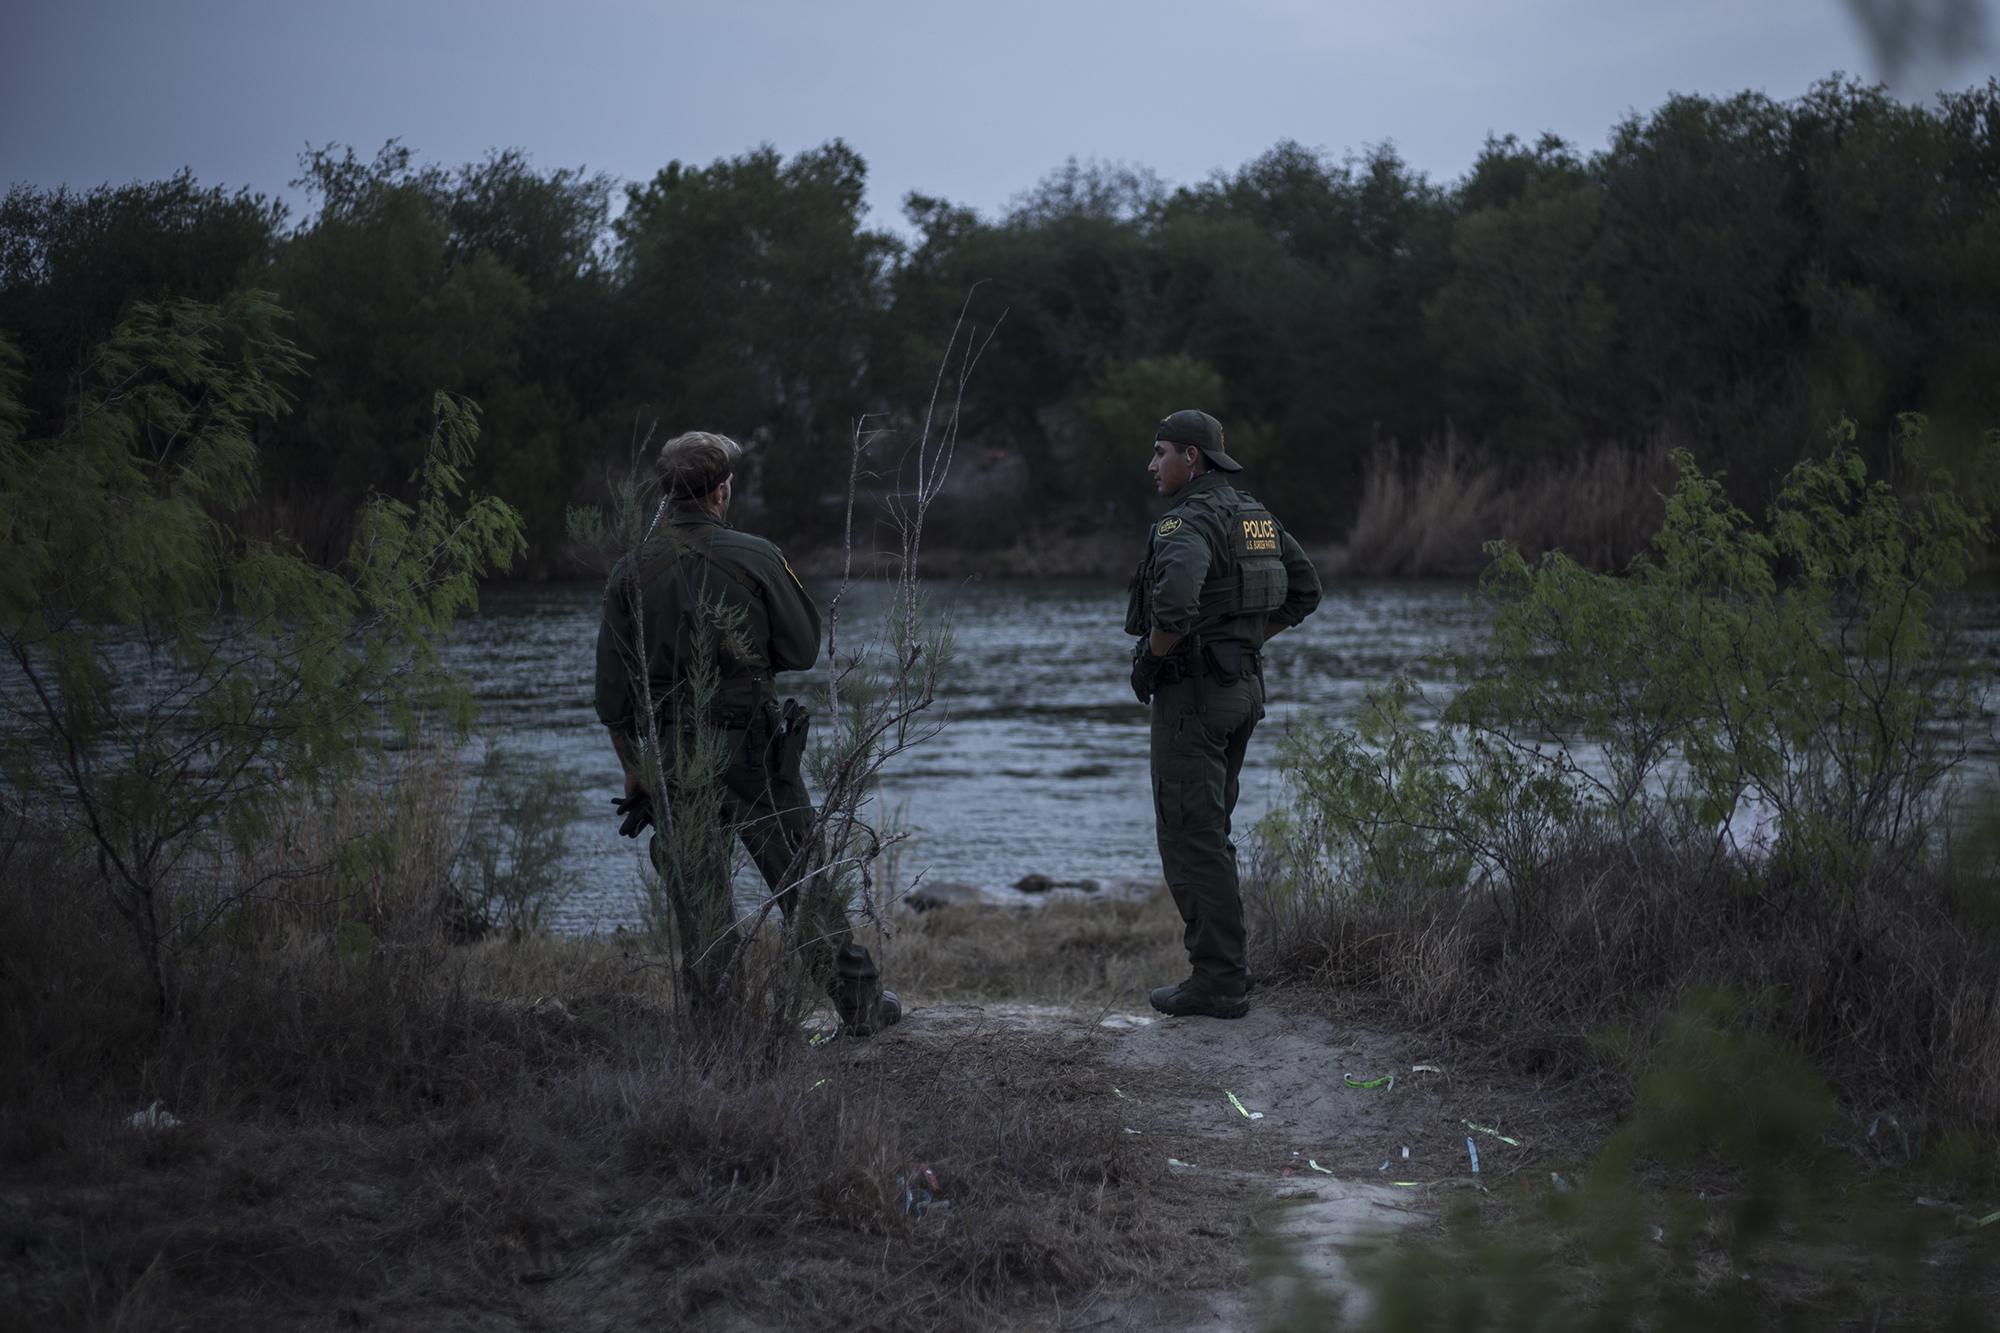 “Hoy no pueden cruzar. Los Rangers de Texas están por la zona y los van a capturar”, gritaban dos agentes a los coyotes que inflaban las balsas del otro lado del río. “No lo hagan hoy, hasta mañana pueden”, gritaban de nuevo. Los agentes se retiraron unos minutos después y los migrantes desaparecieron por los montes de la ribera del río, quizá a intentar por otro punto.